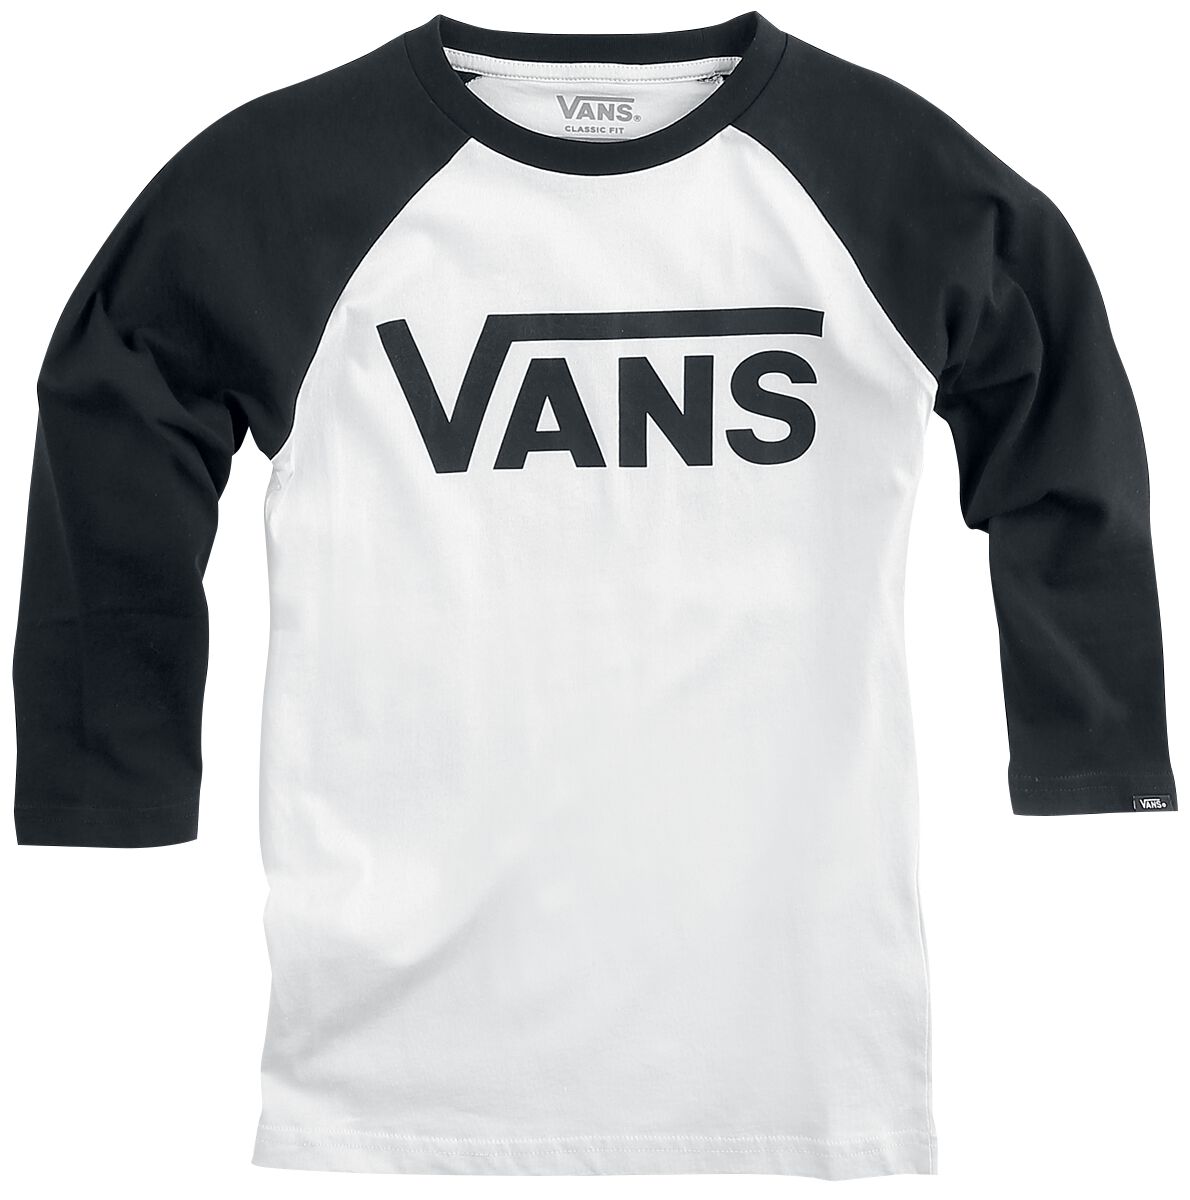 Vans Kids Langarmshirt - BY VANS Classic Raglan - S bis XL - für Mädchen & Jungen - Größe M - schwarz/weiß